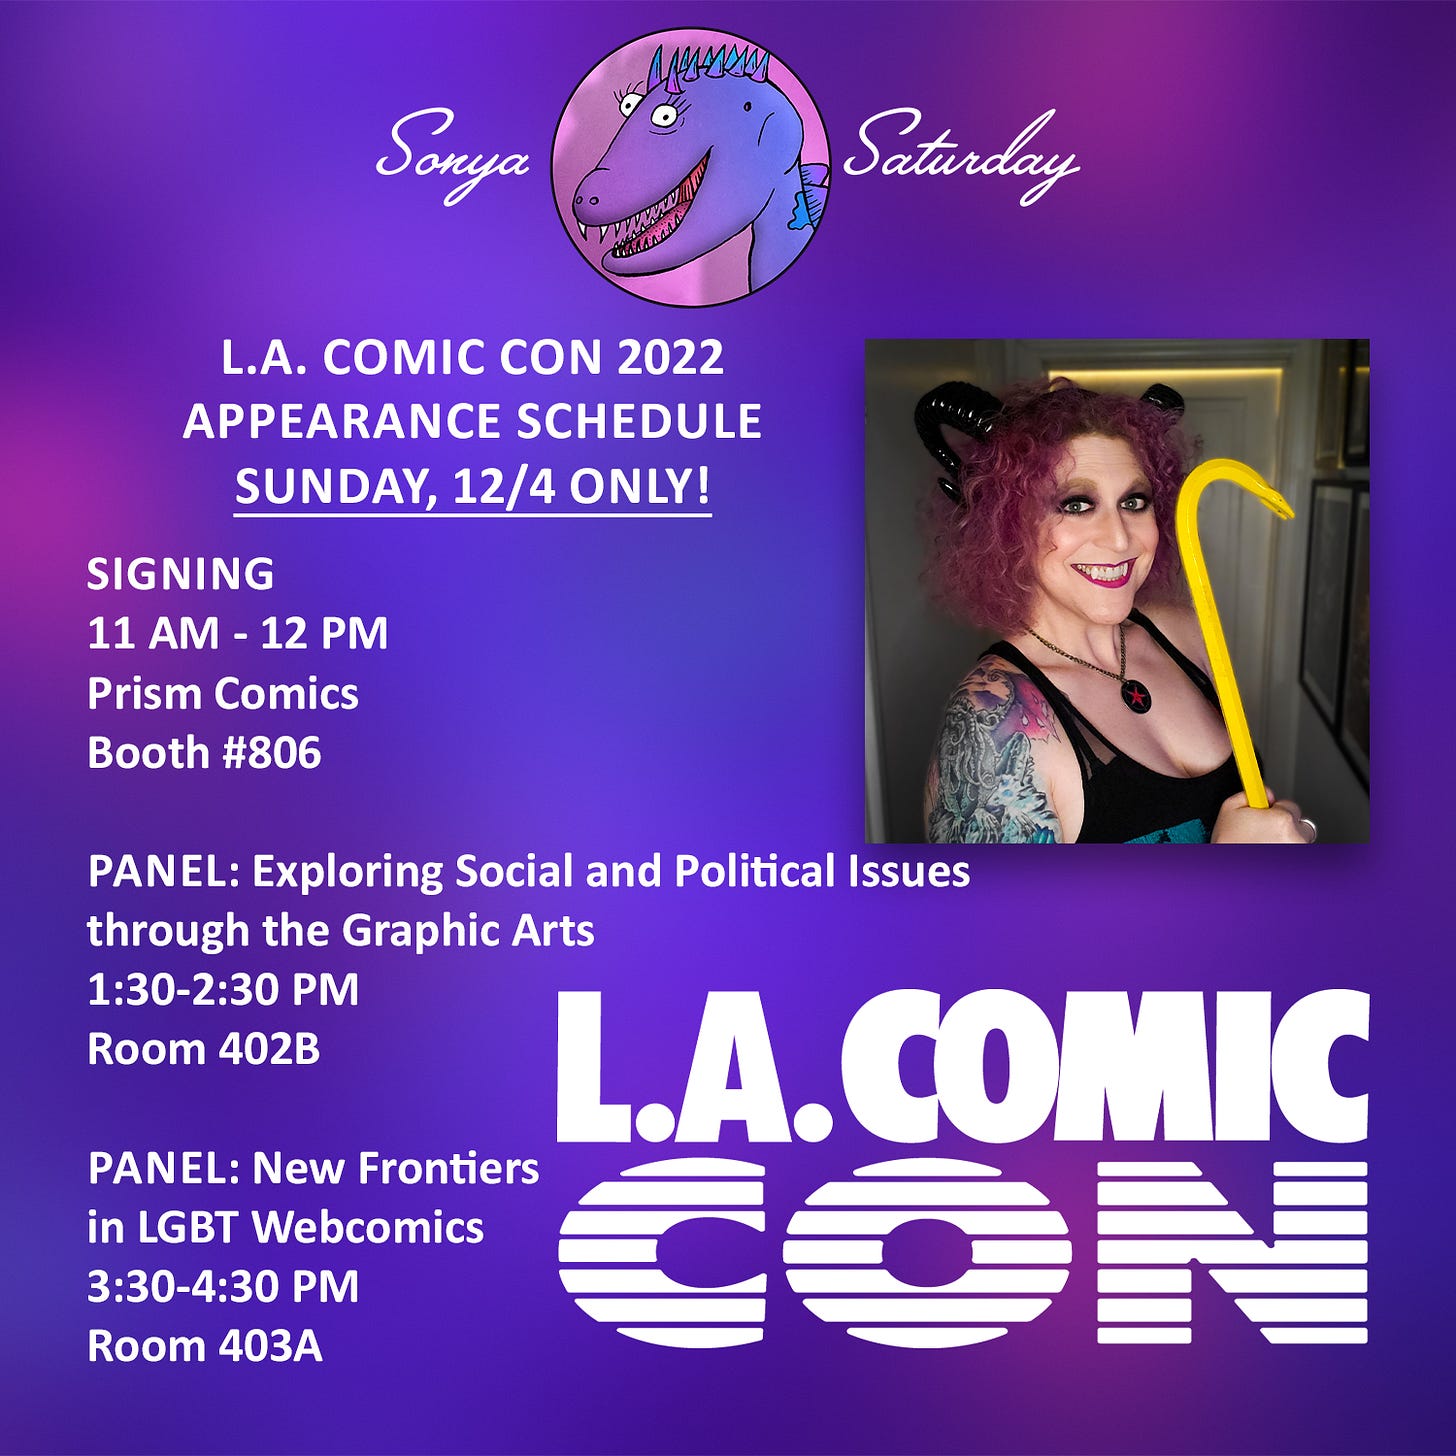 Sonya Saturday's LA Comic Con appearance schedule